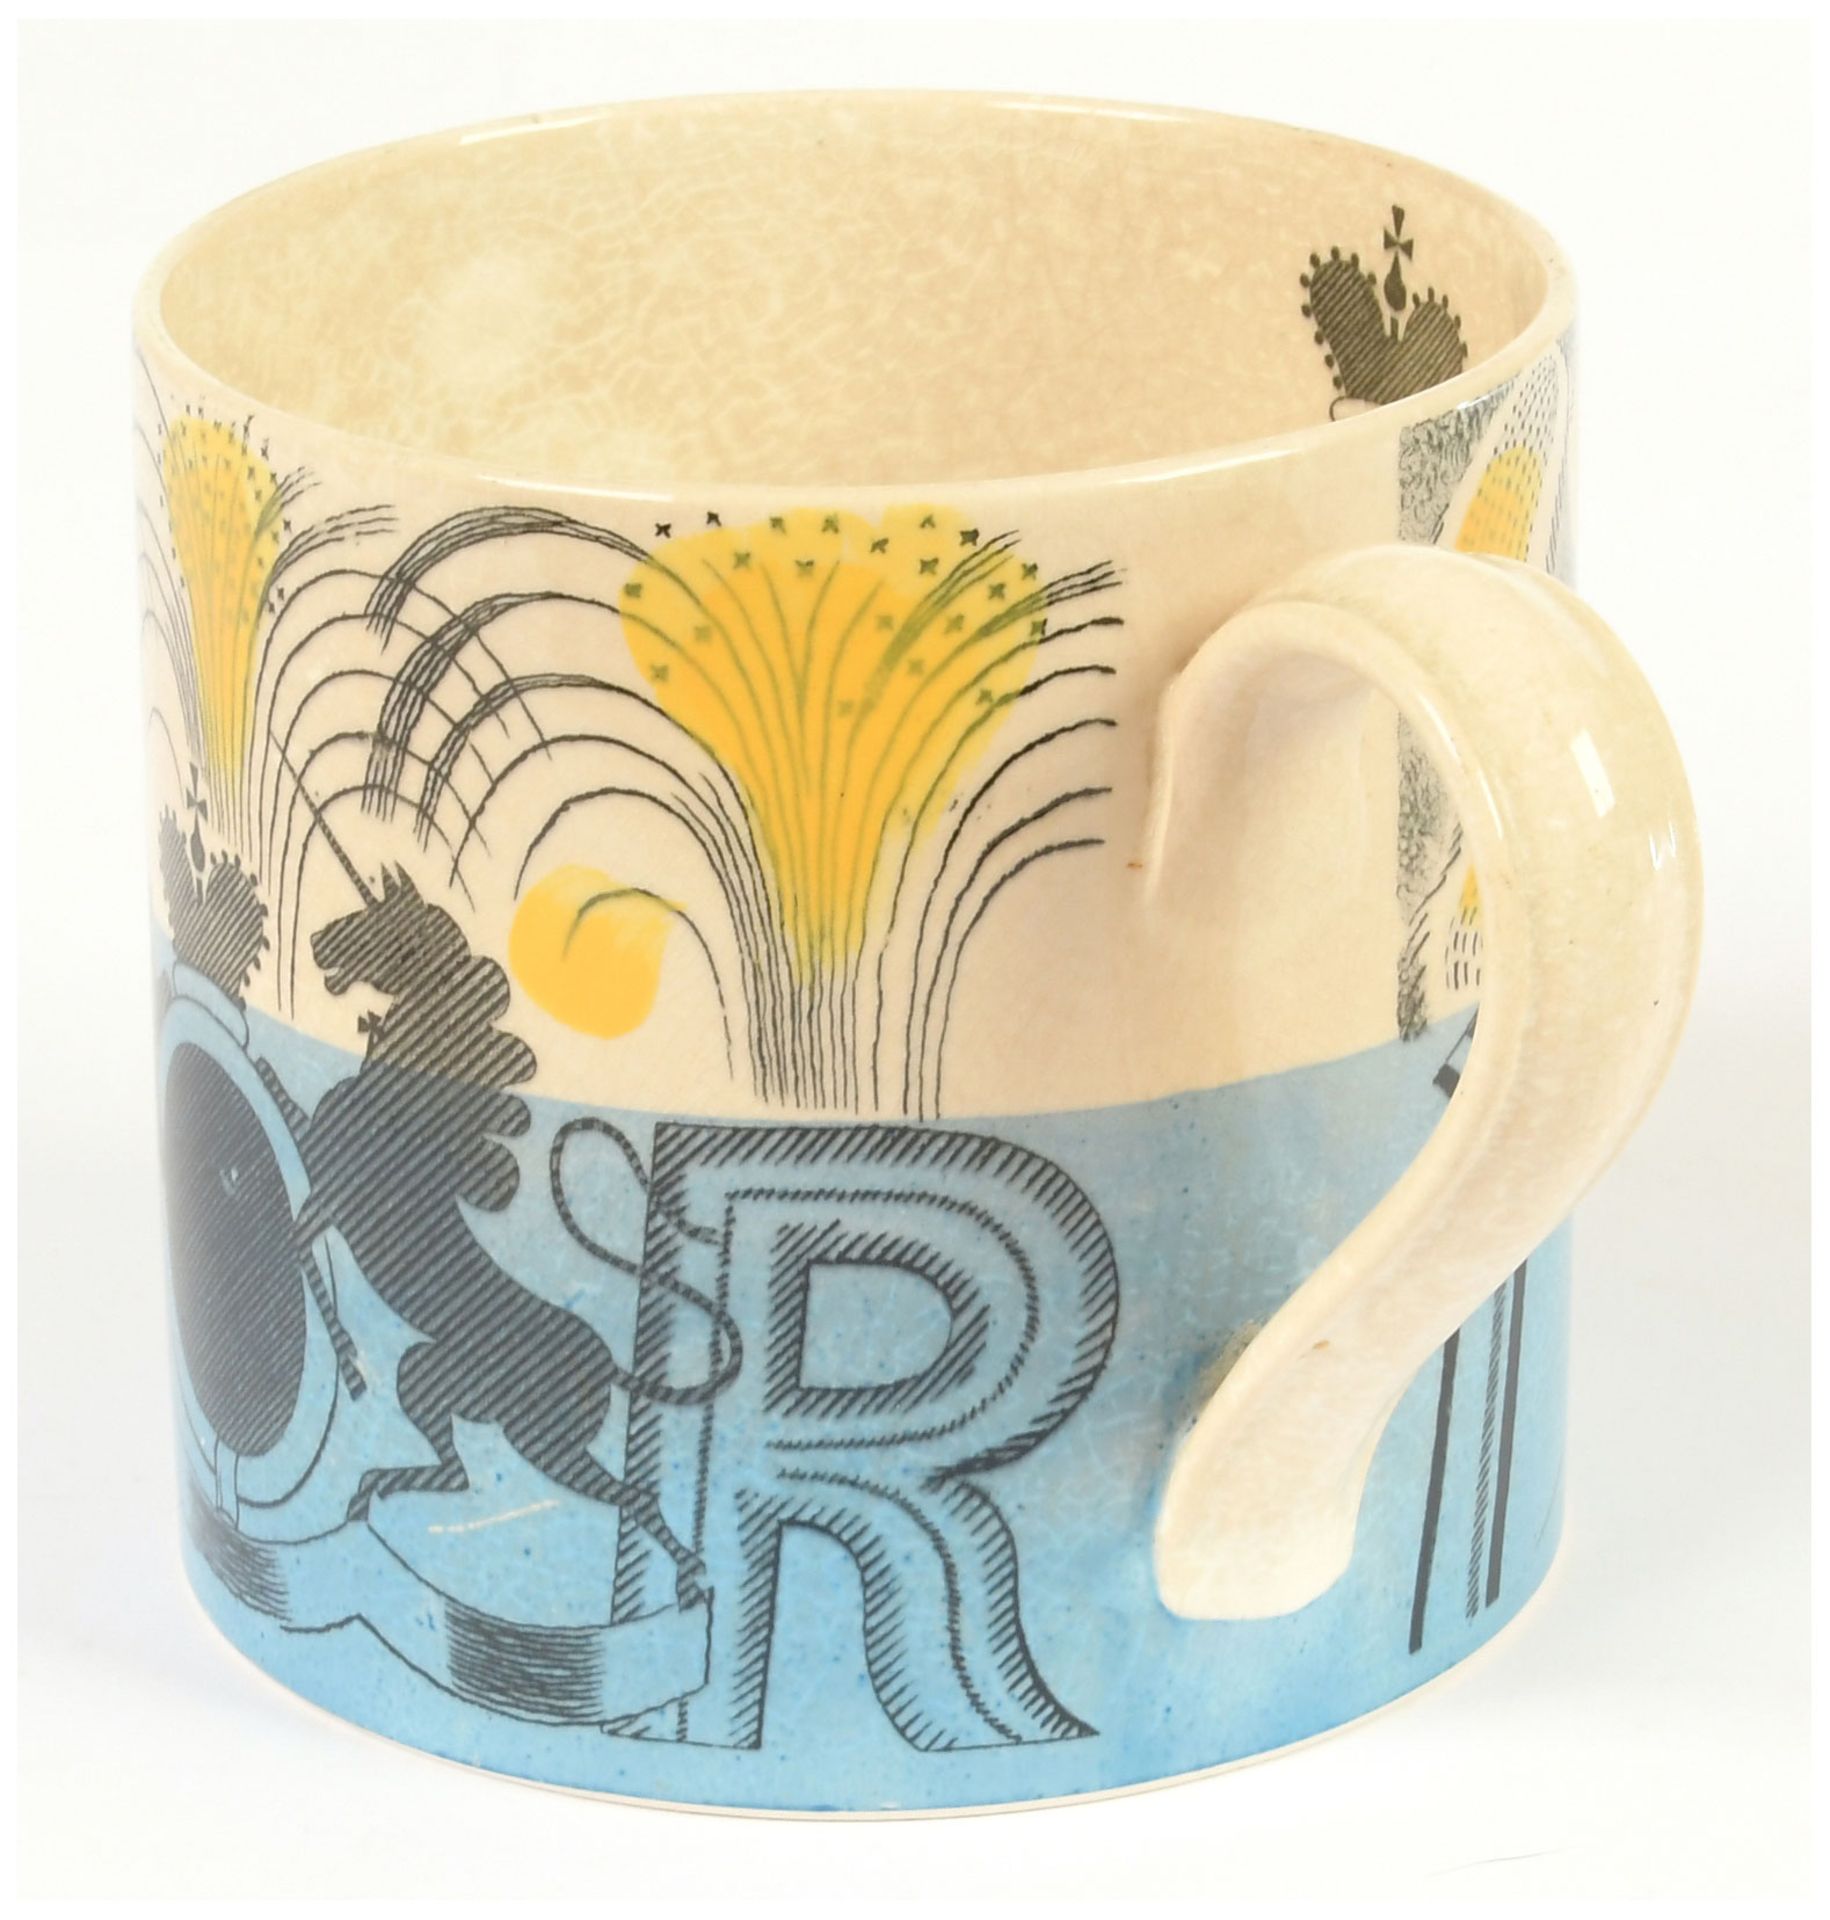 Wedgewood commemorative mug designed by Eric - Image 6 of 7